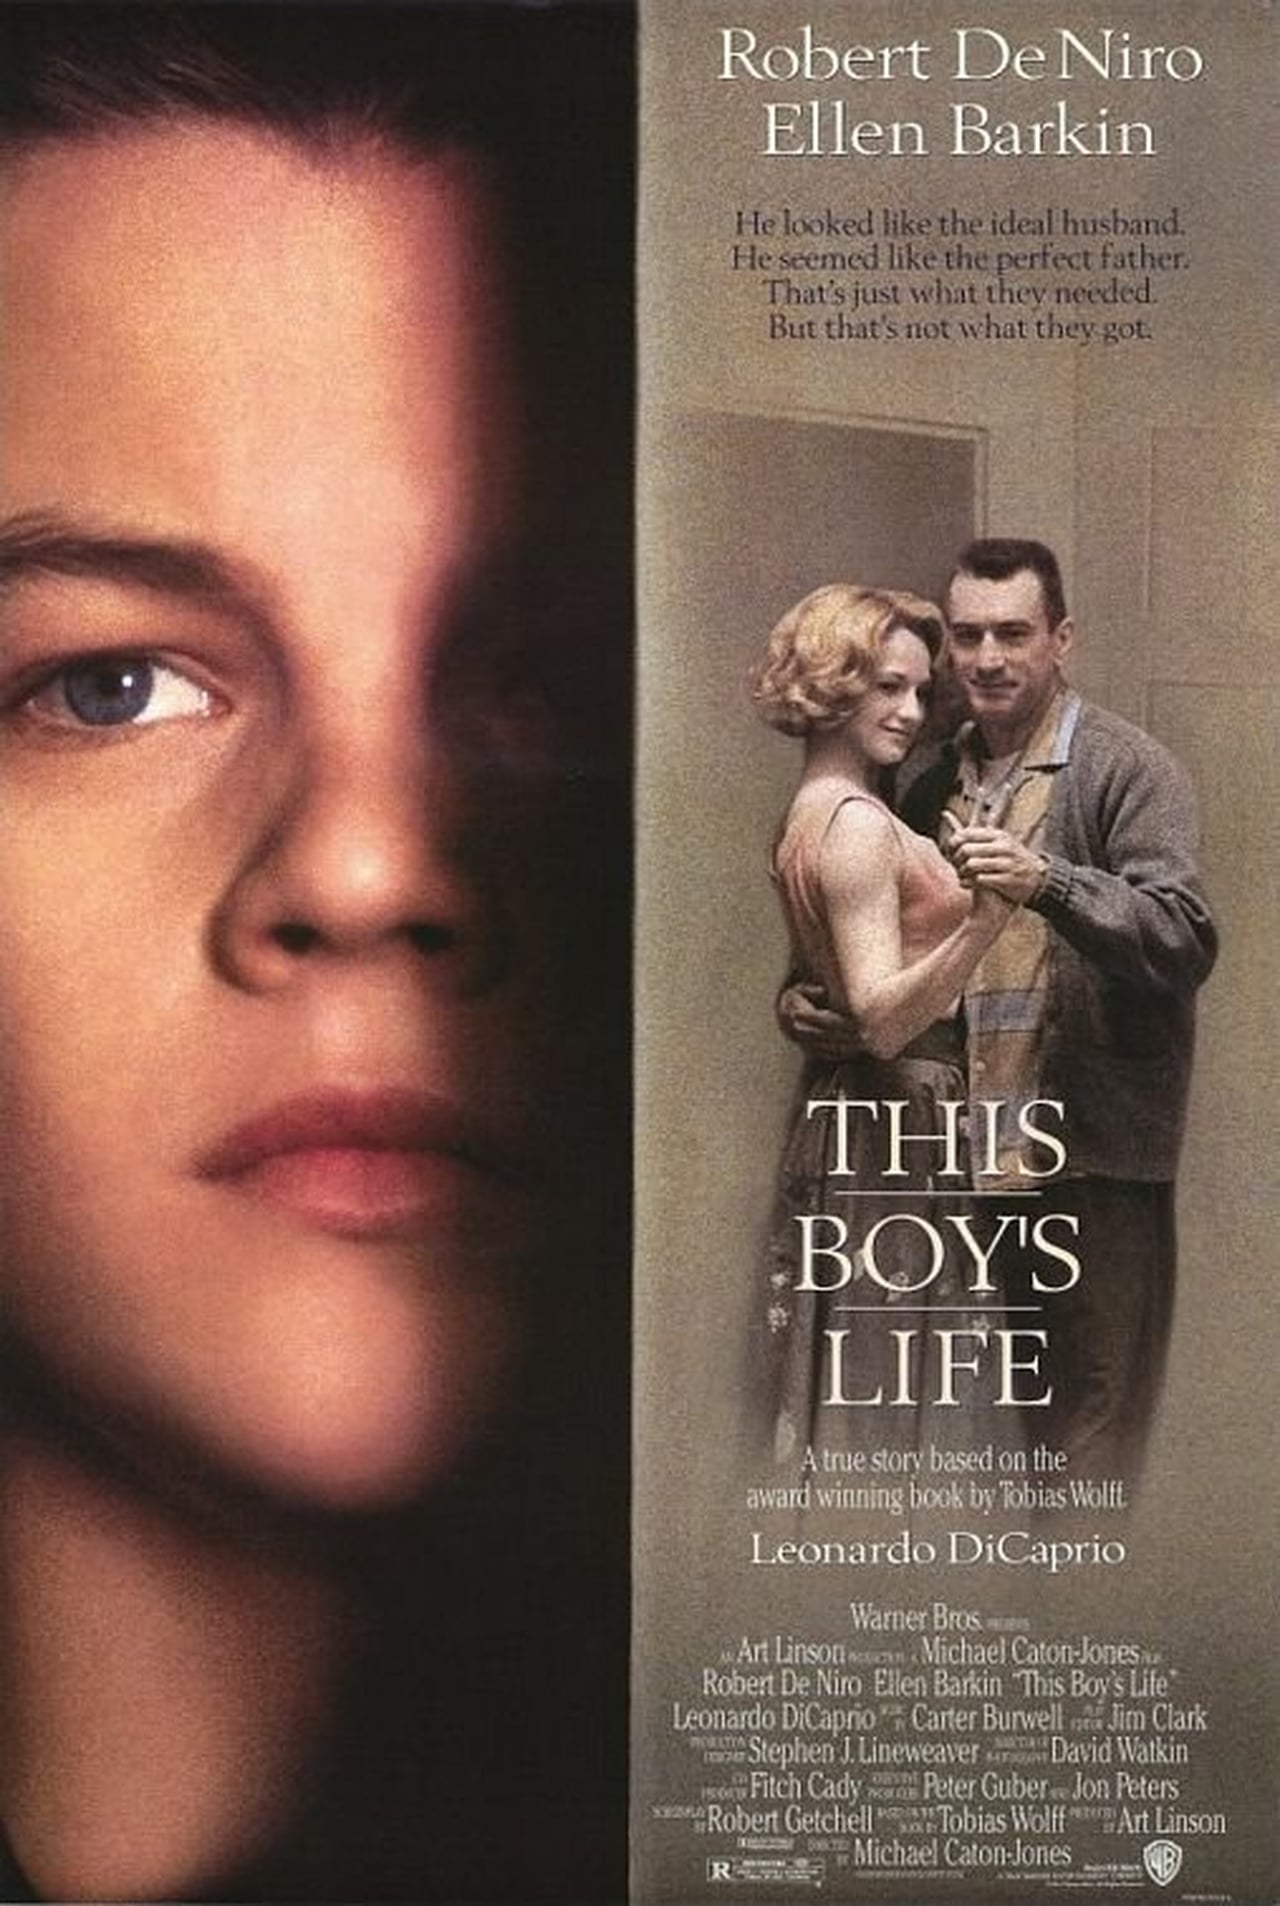 EN - This Boy's Life (1993) DE NIRO, DICAPRIO